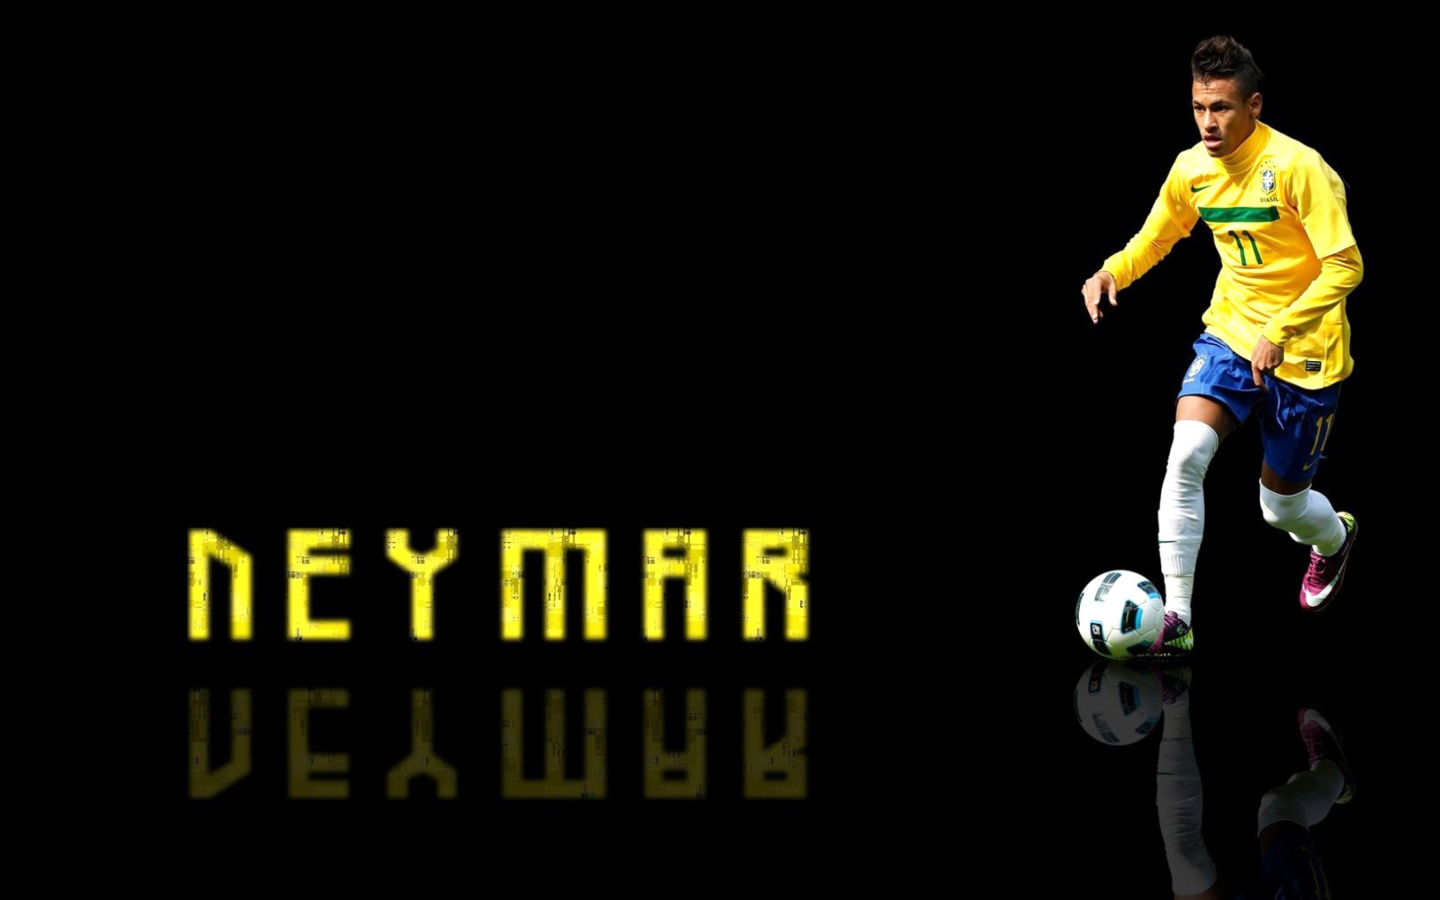 Das Neymar Brazilian Professional Footballer Wallpaper 1440x900